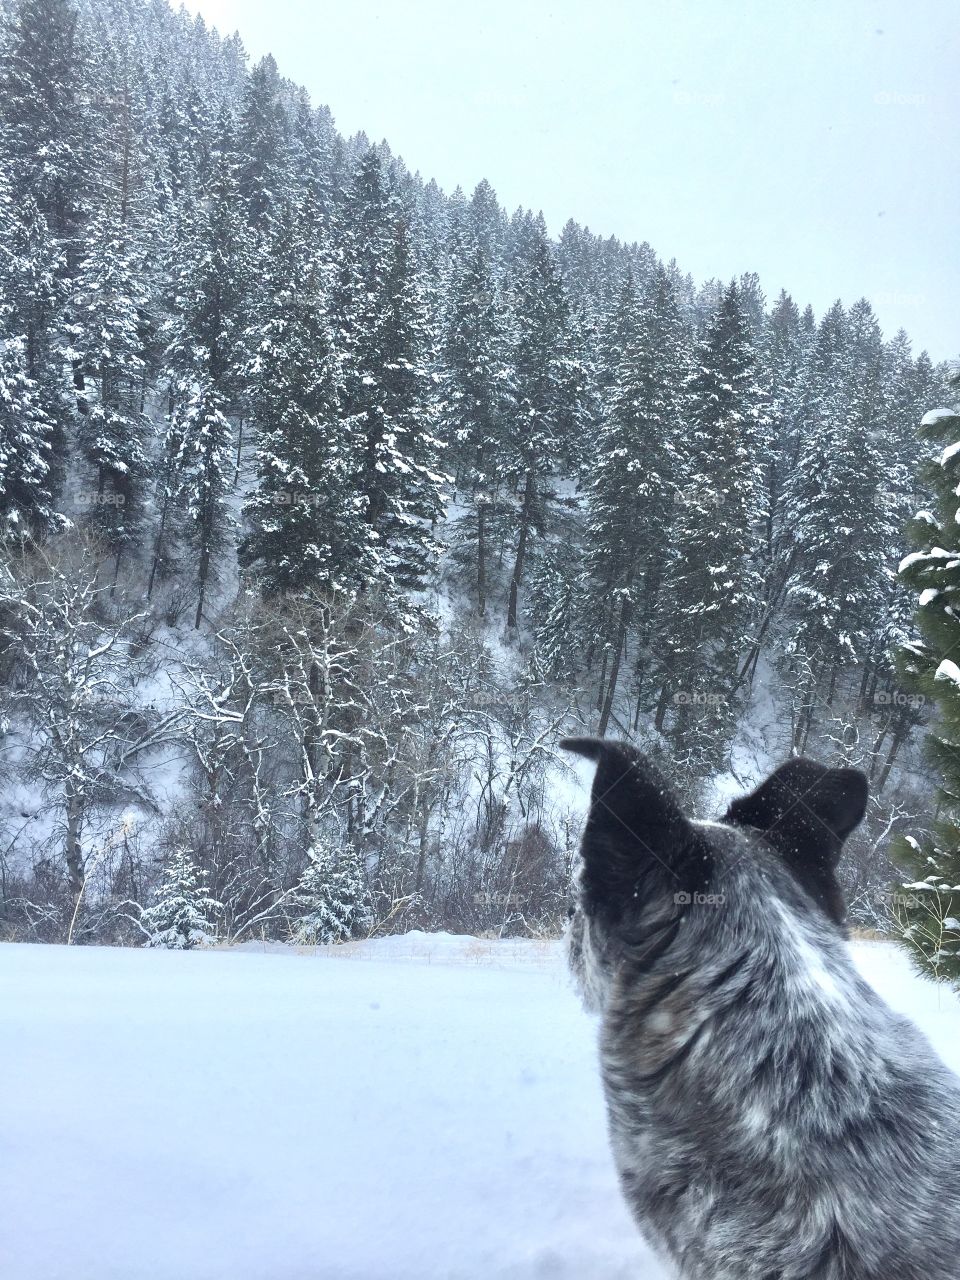 Doggo enjoying the cold weather. 